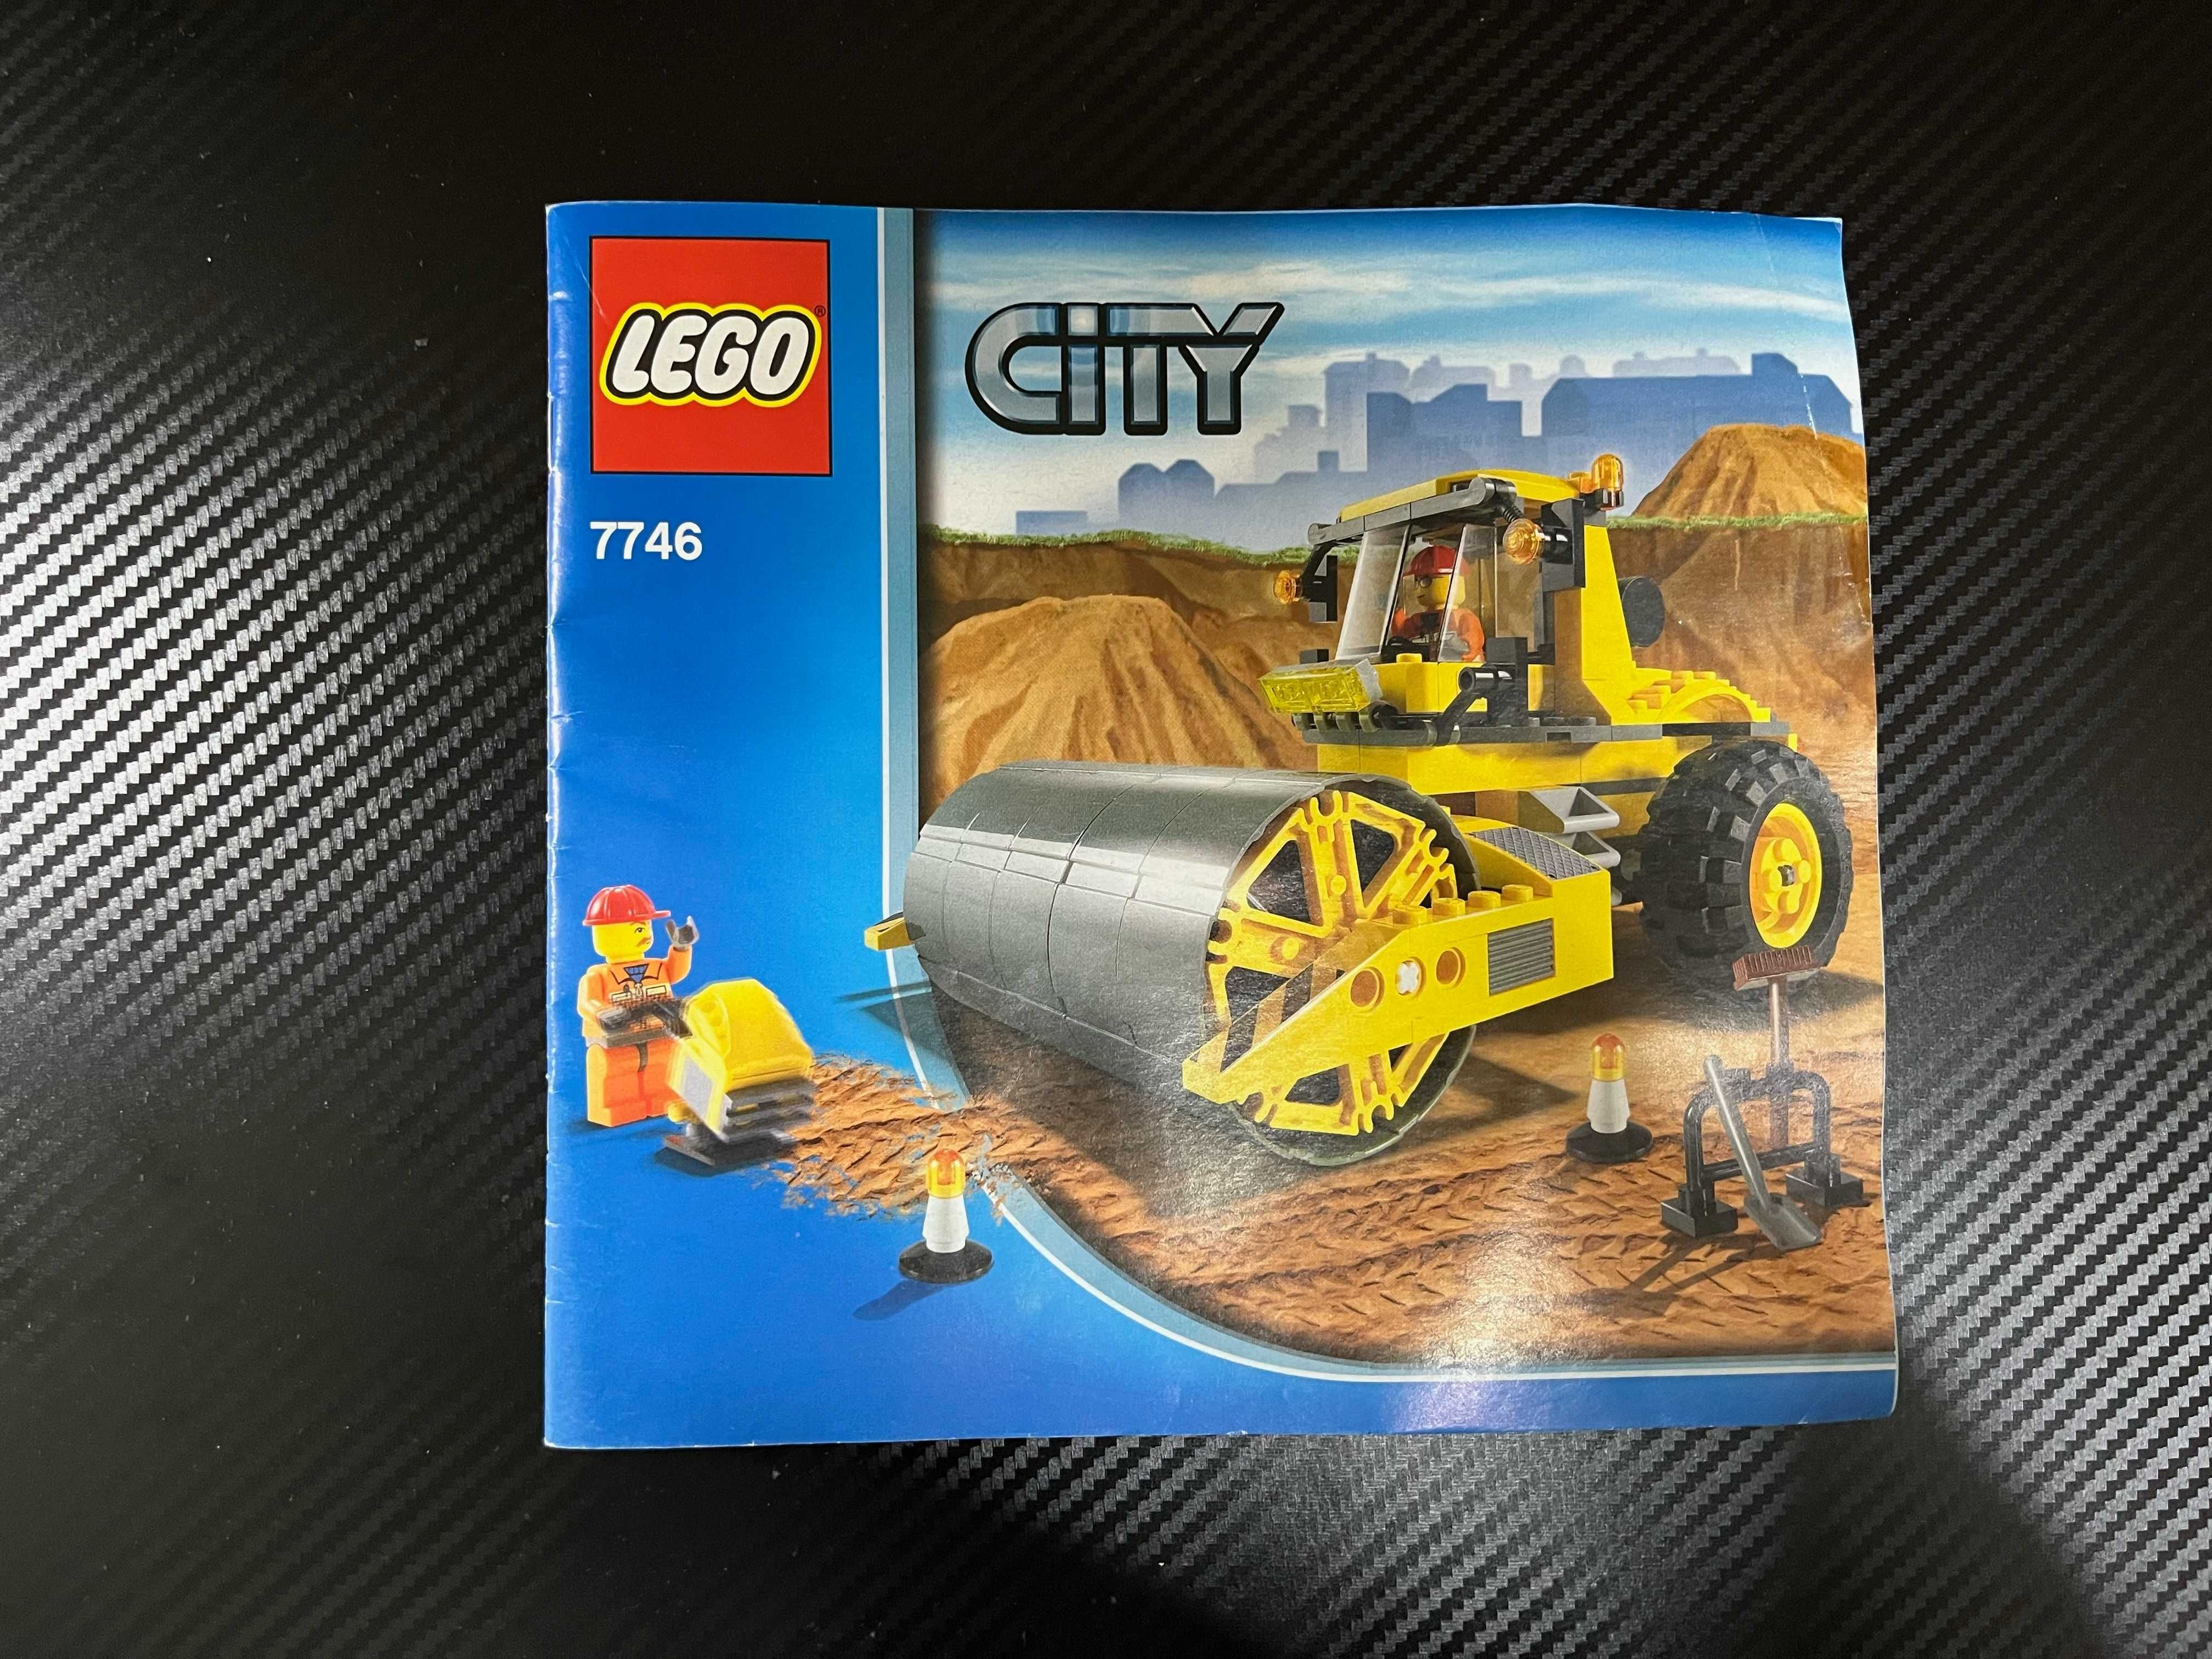 Lego City 7746, Walec - brakuje jednego elementu